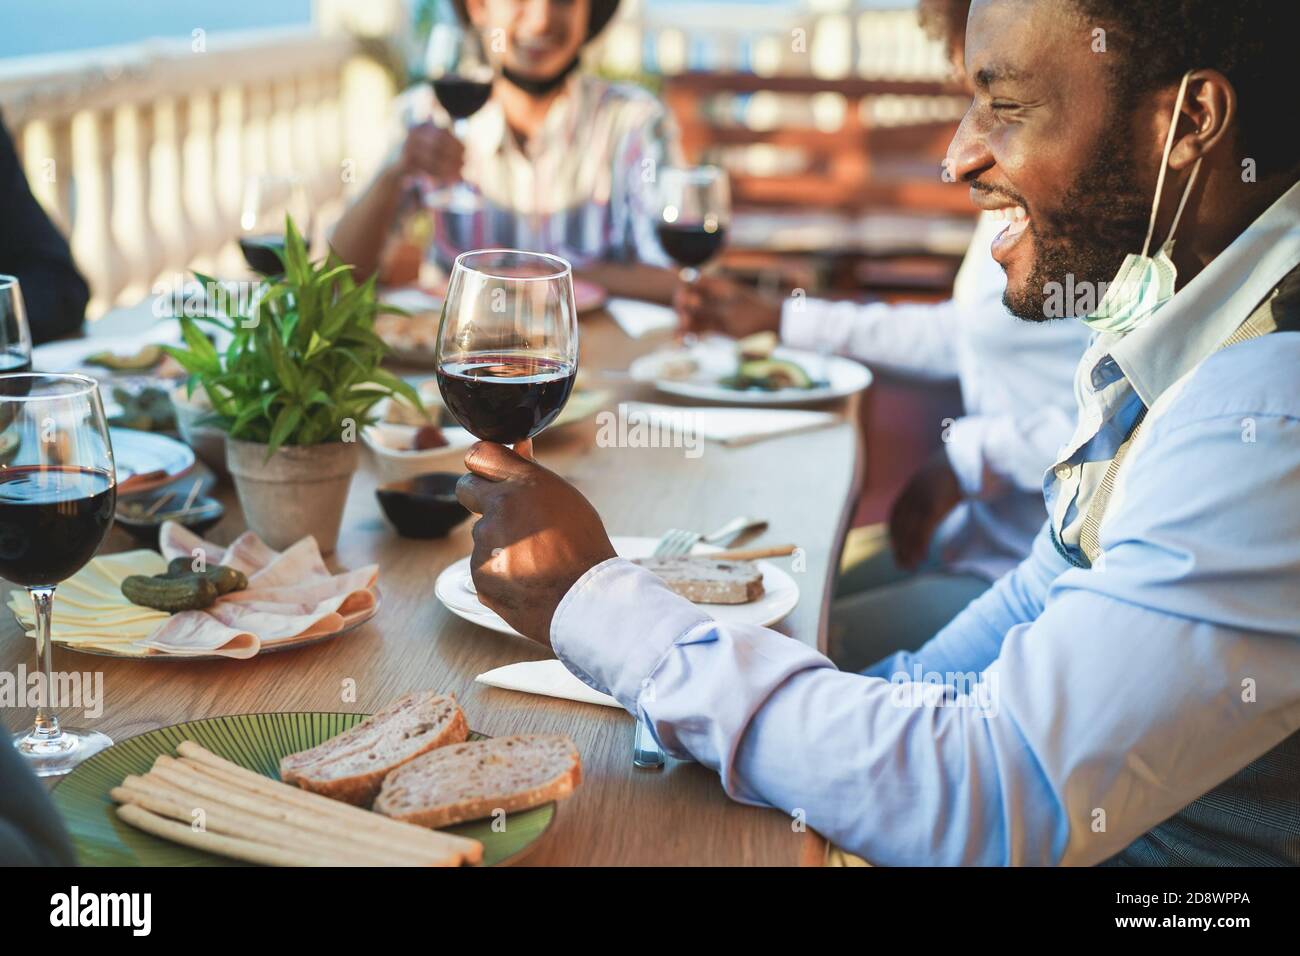 Fröhliche multirassische Freunde essen und trinken Wein, während das Tragen Schutzkleidung Masken - Fokus auf schwarzen Mann Stockfoto